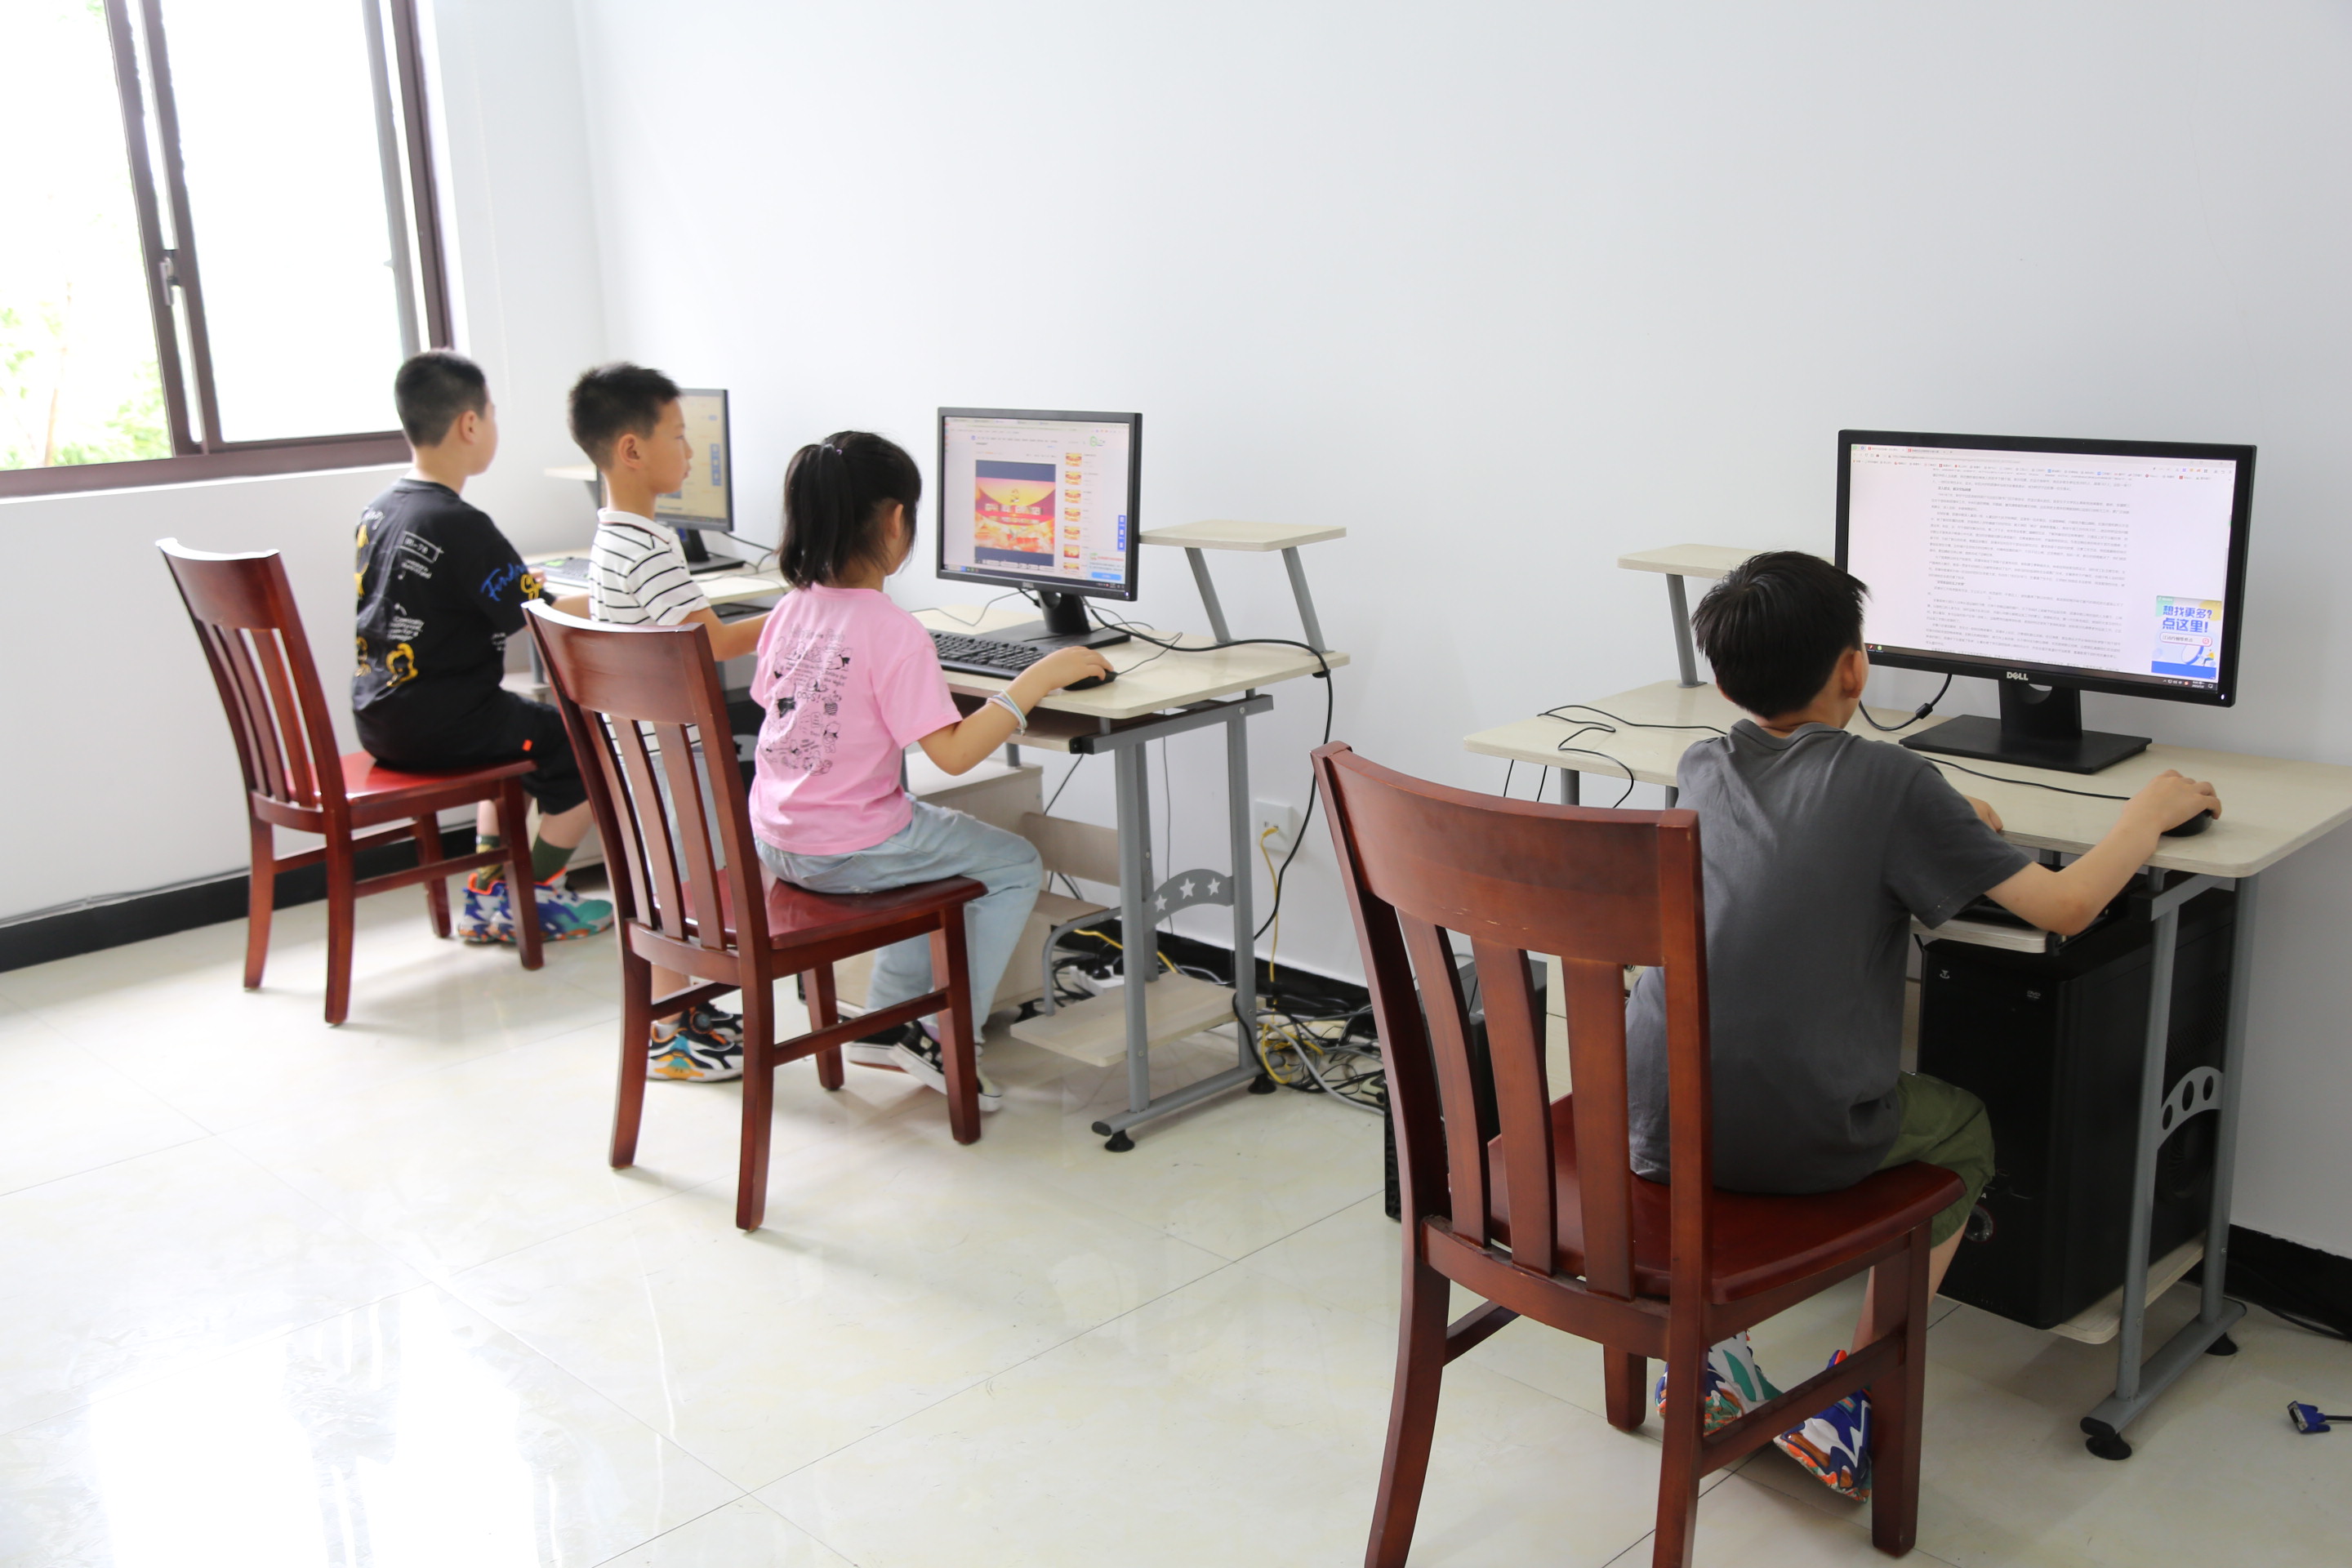 南通启东市汇龙镇圩南村学生在村里的活动室上网学习。陈宇摄